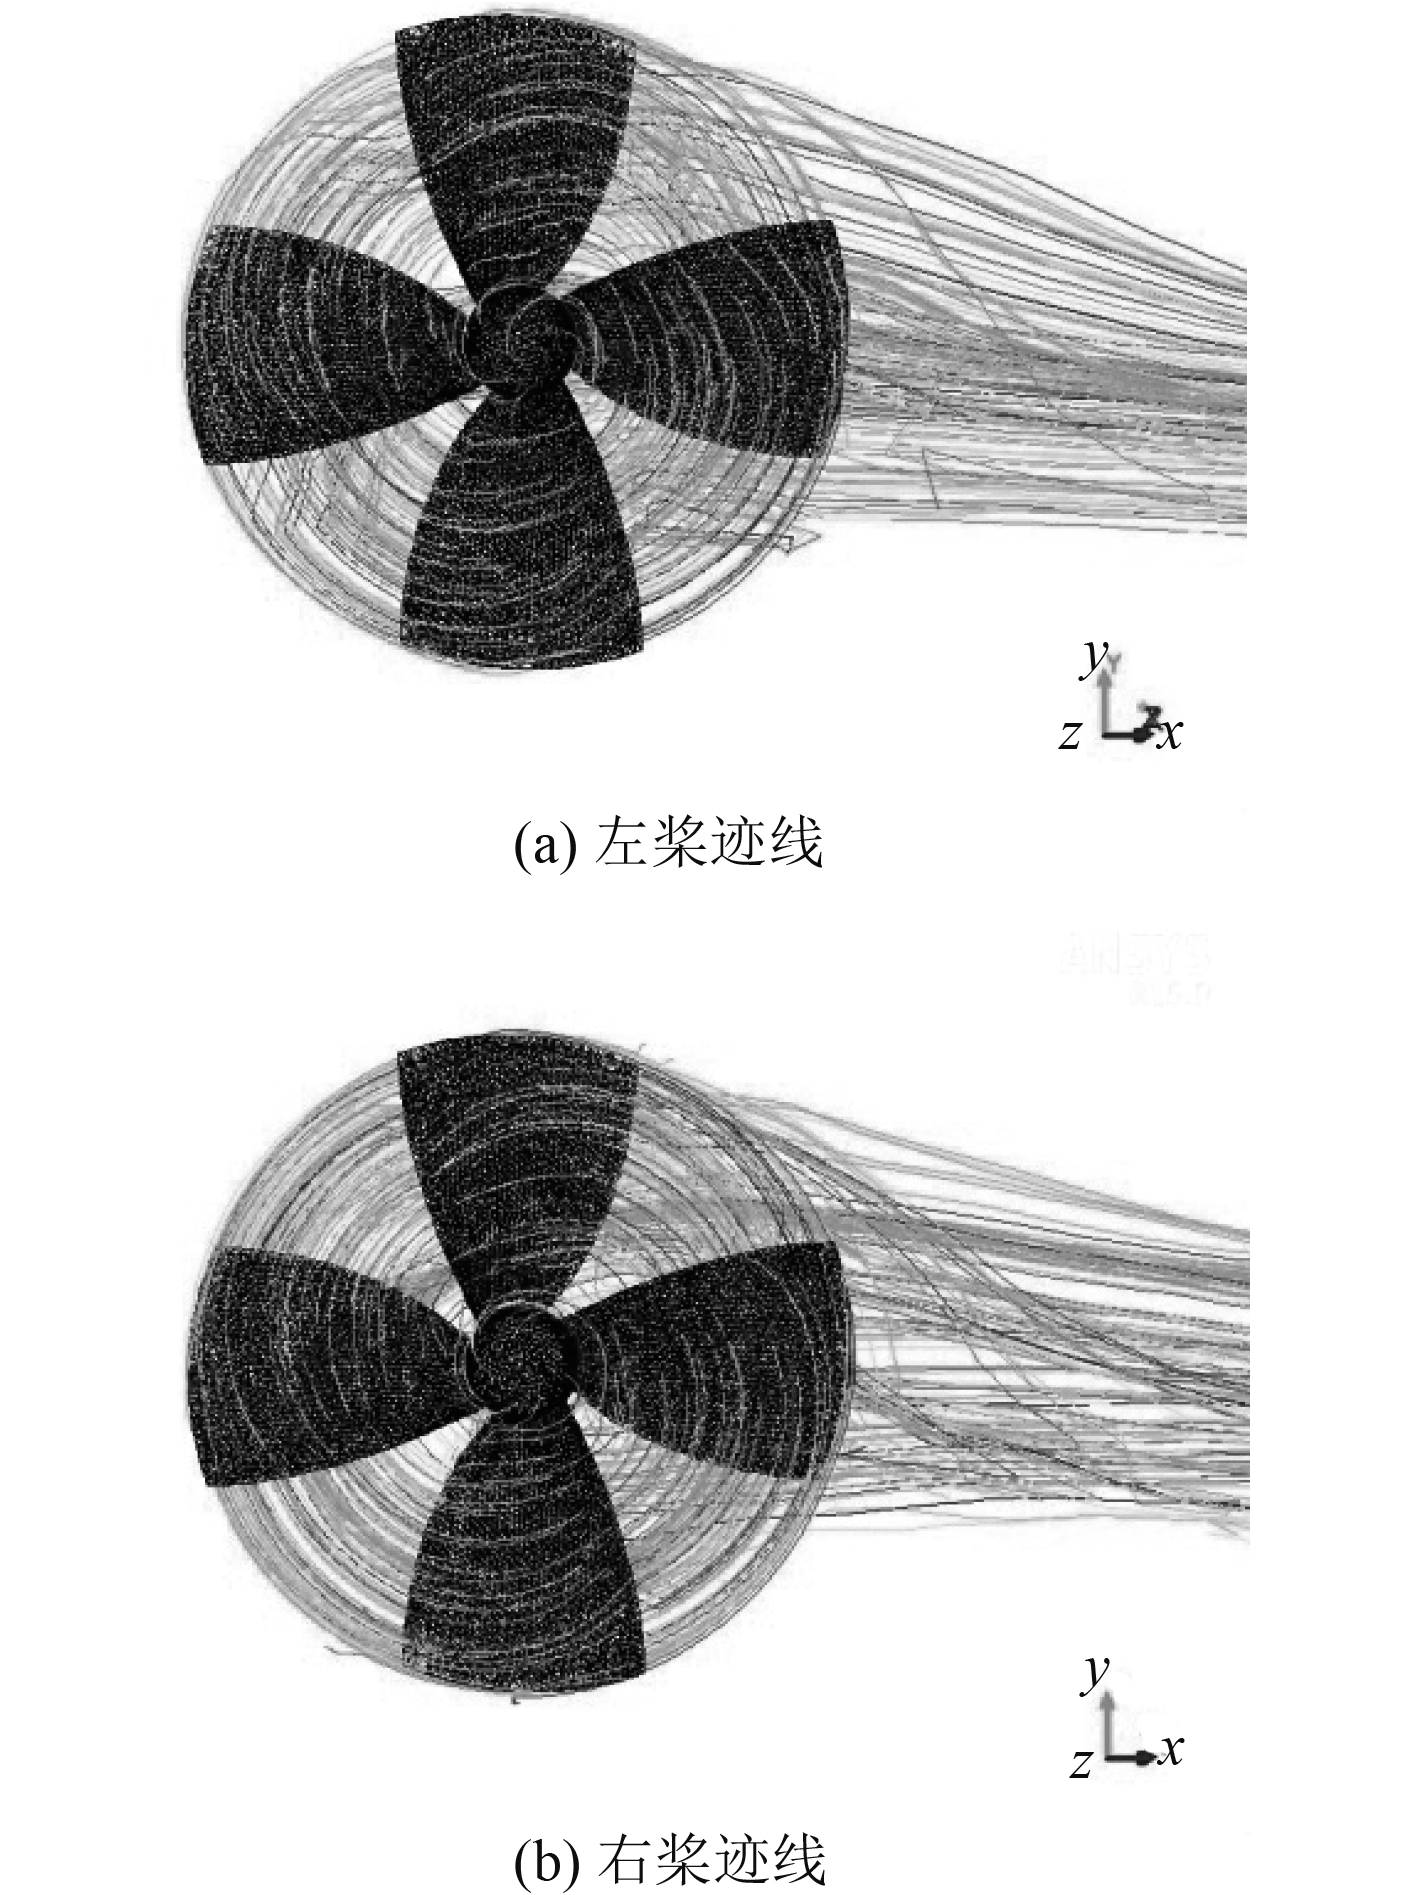 火箭发动机推力偏心对弹丸引信的影响 - 兵器装备工程学报